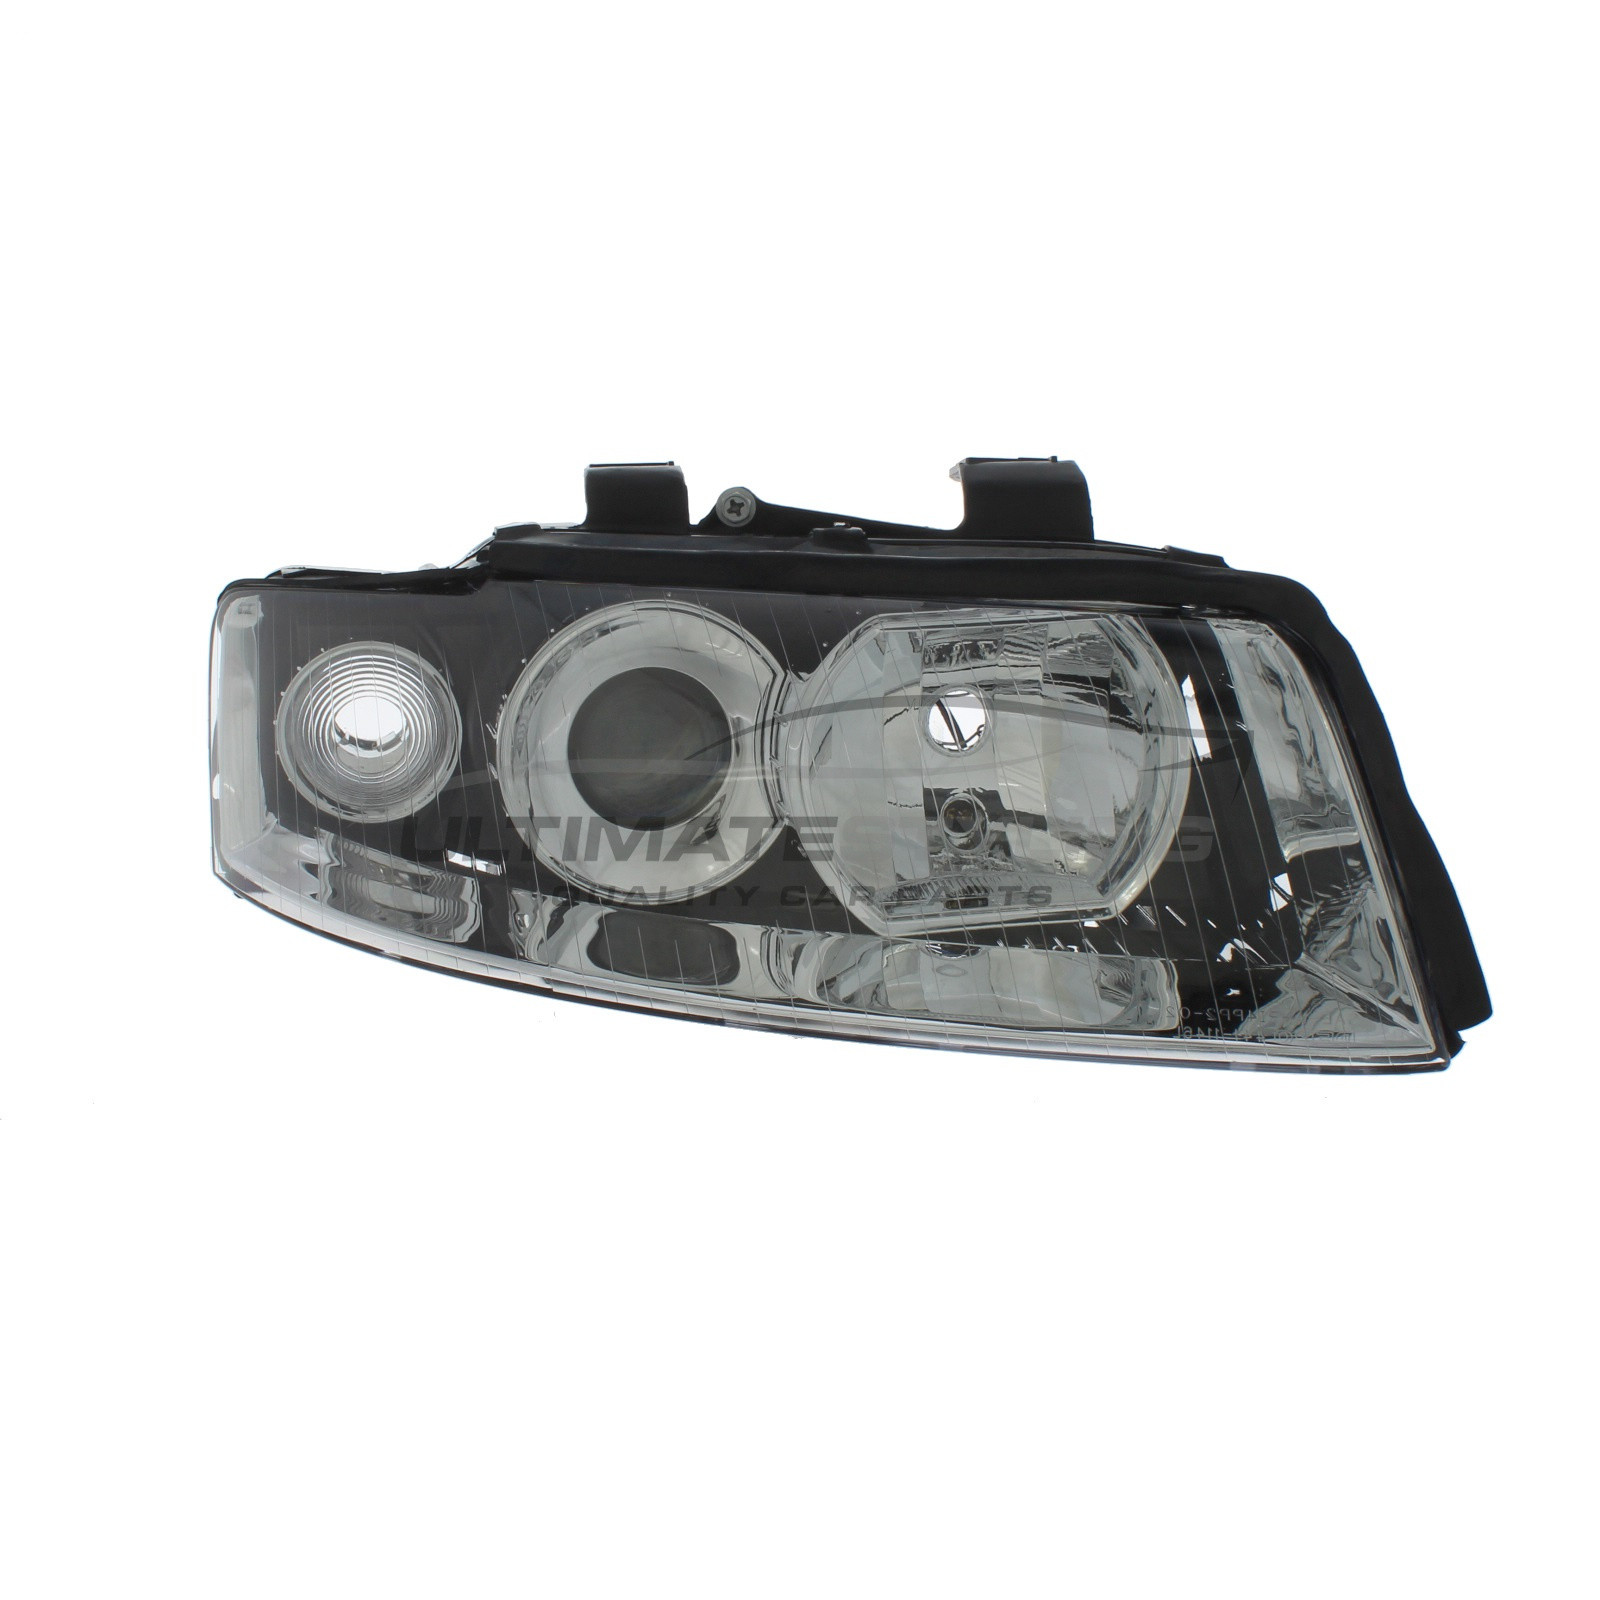 Headlight / Headlamp for Audi A4